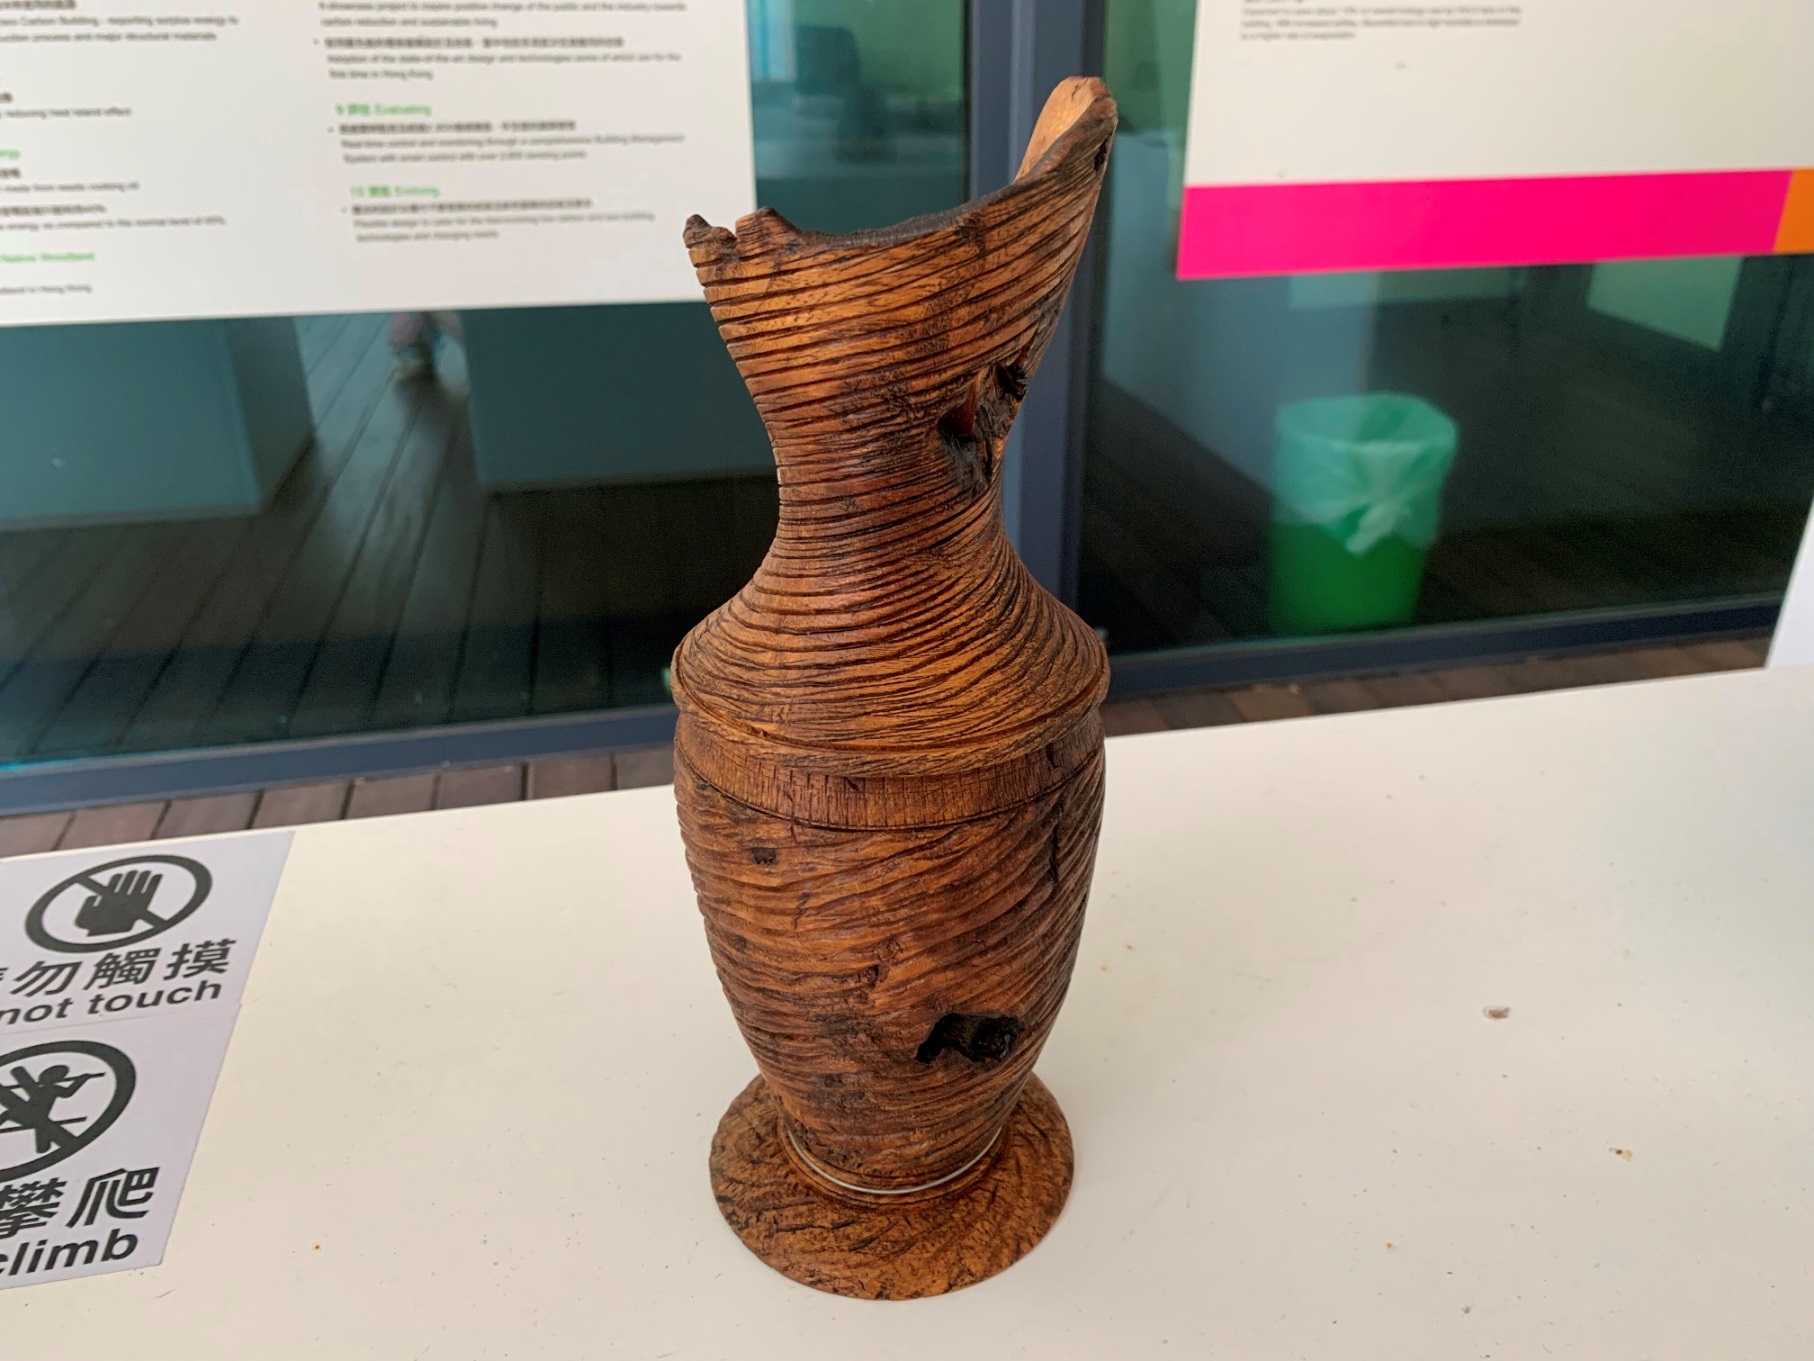 【榆木花瓶】這個愛爾蘭榆木本身是一塊只有12厘米高的小木塊，木質看來古舊，有部份已破損，難以想像它的原貌，要保留原本的特色甚有困難。工匠別出心裁，保留頂部不規則的獨特原狀，以反映作品的天然美及特色。  創作人：Joe LAIRD  愛爾蘭木匠